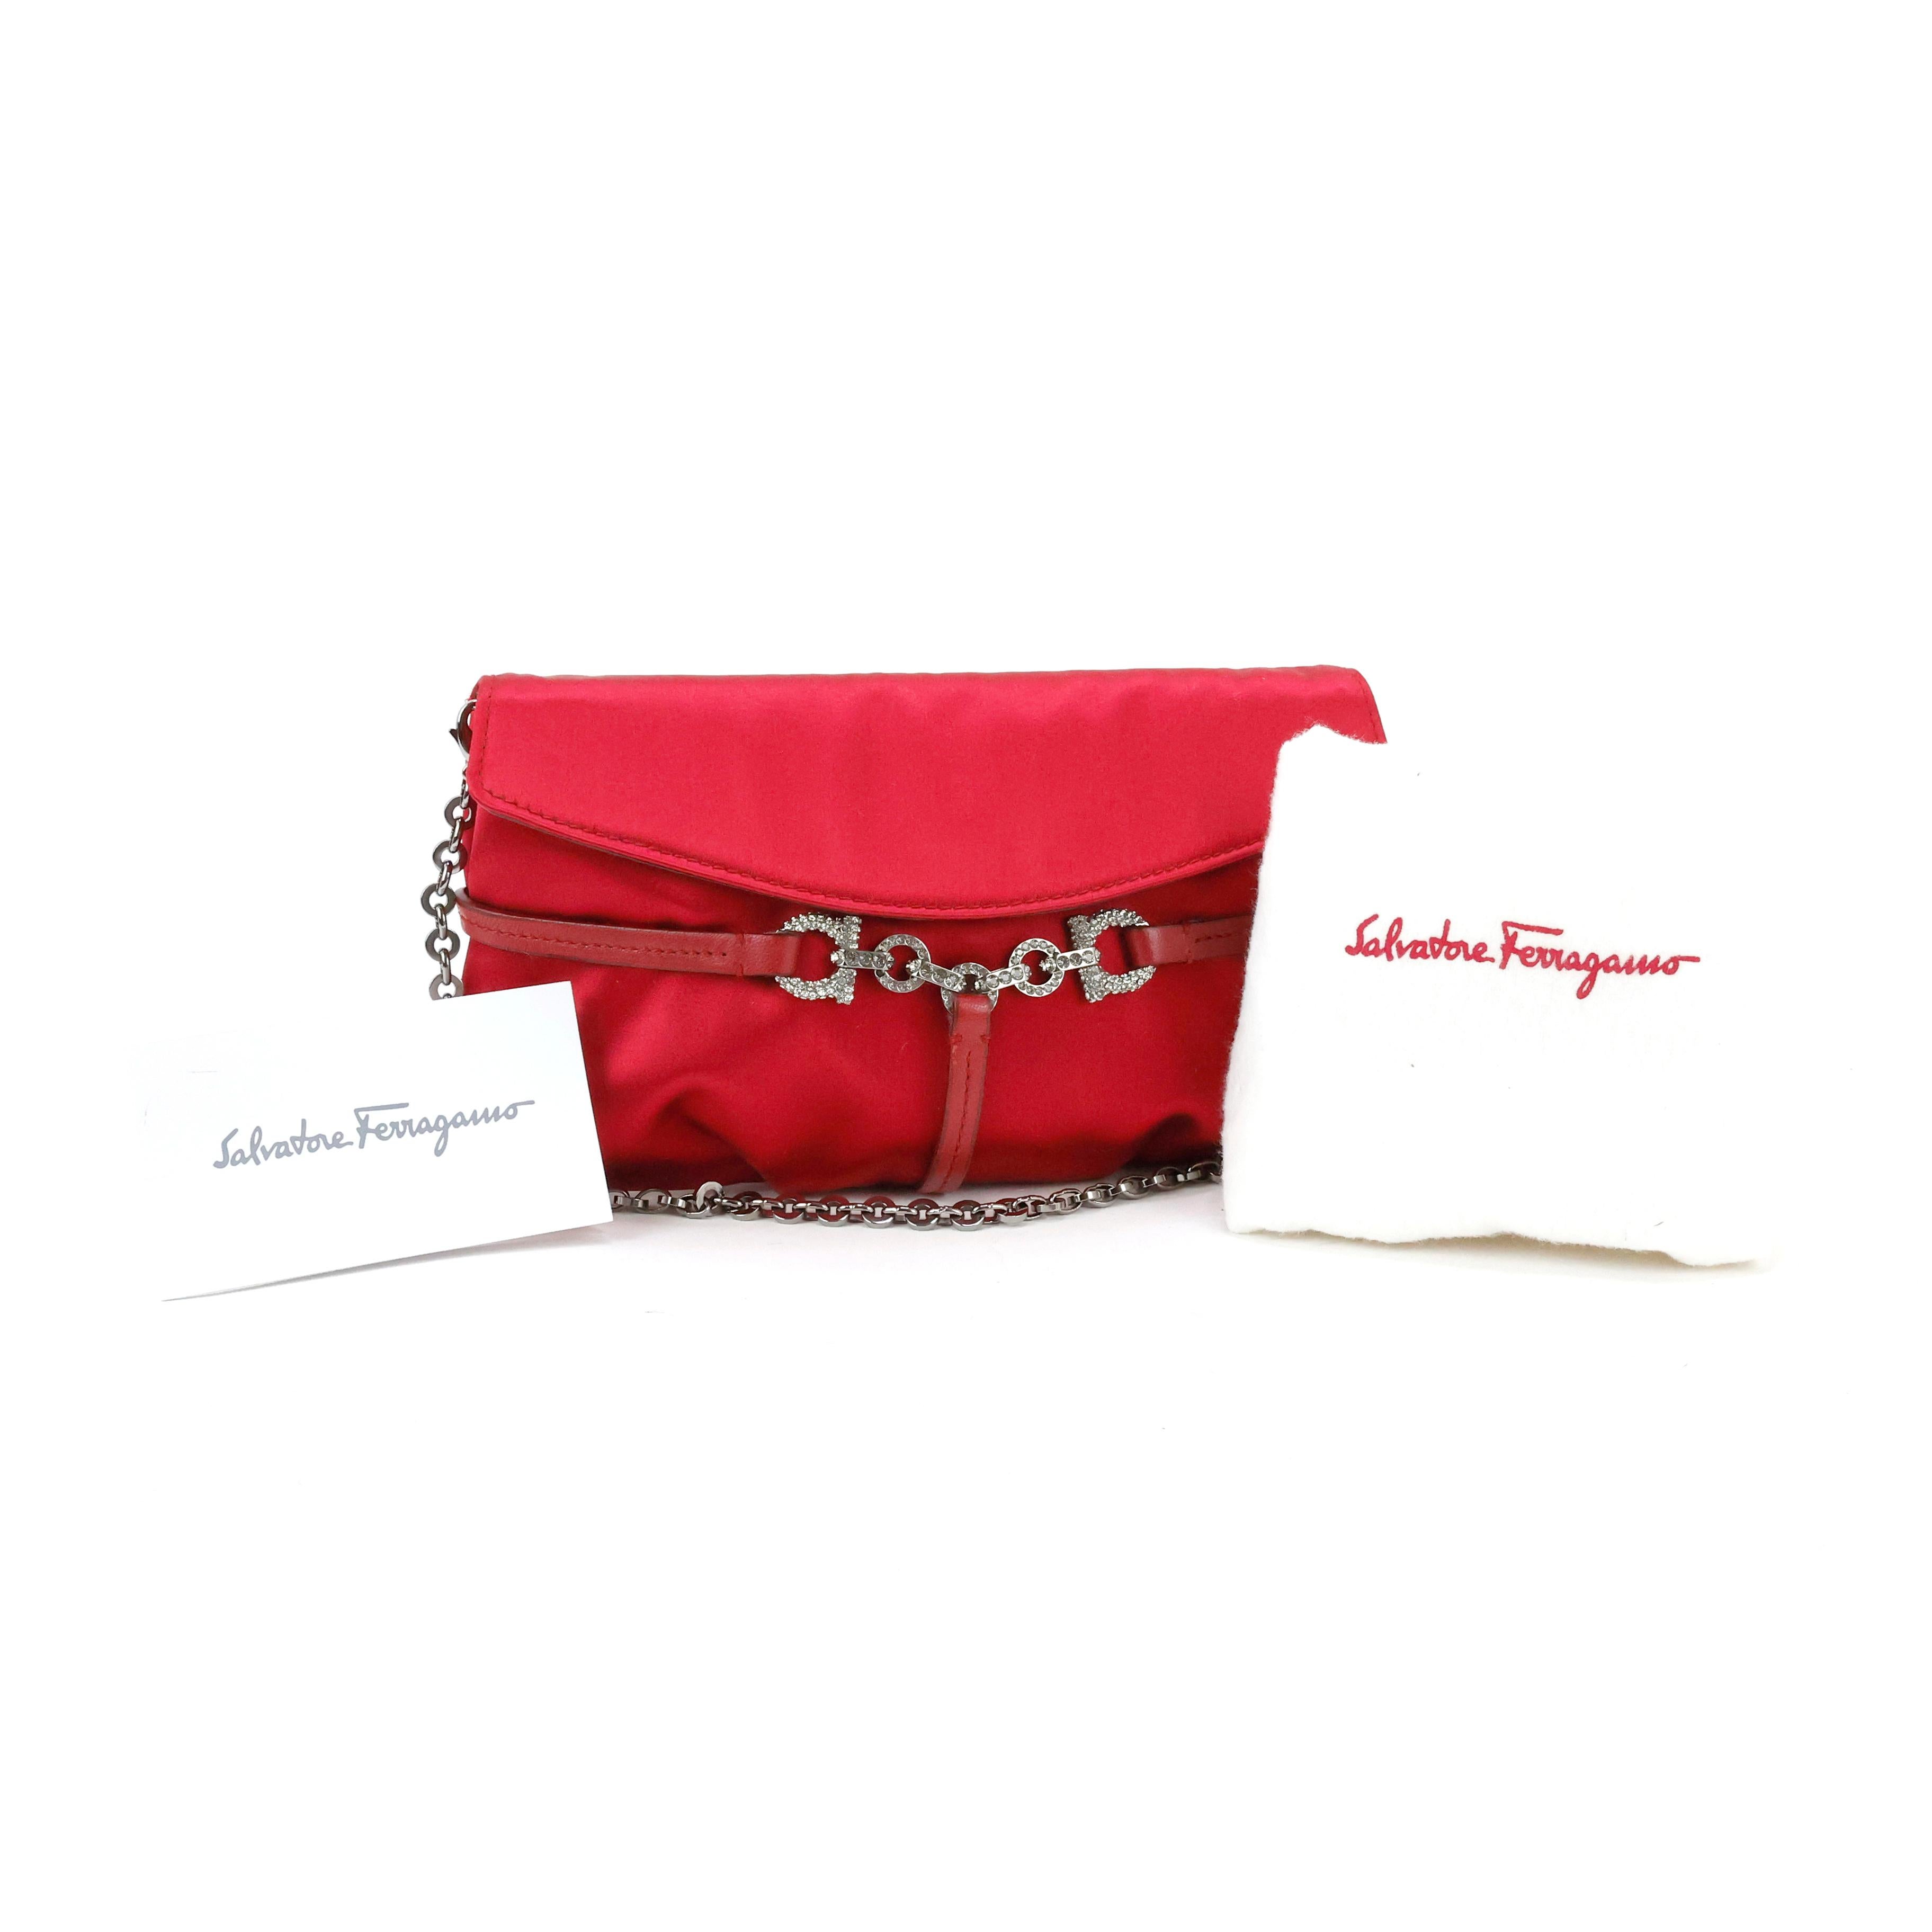 Salvatore Ferragamo Embellished Silk Bag For Sale 1